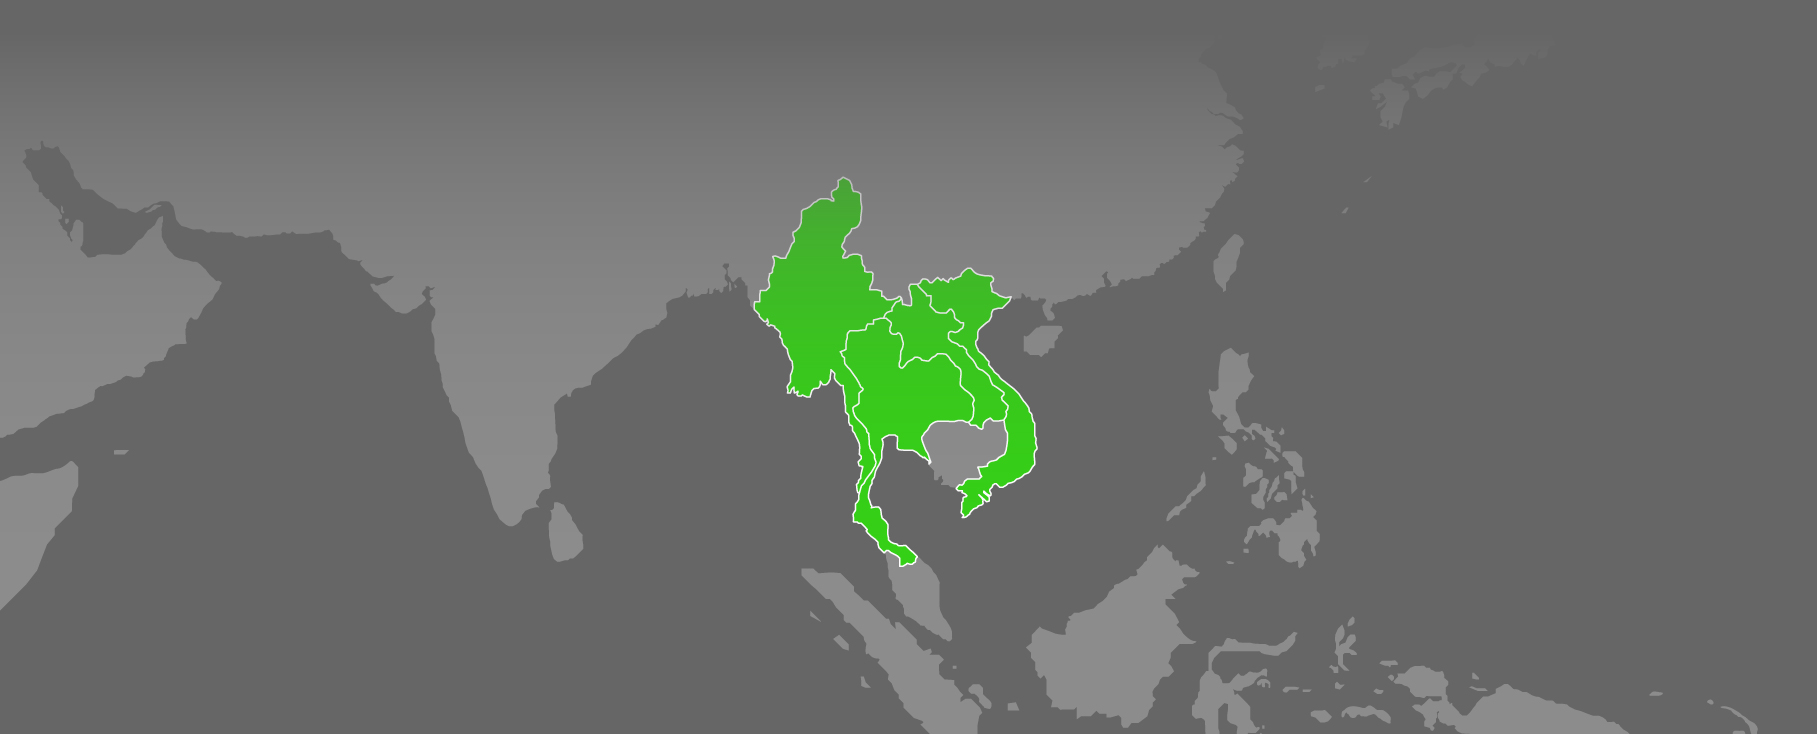 Mekong Region Map